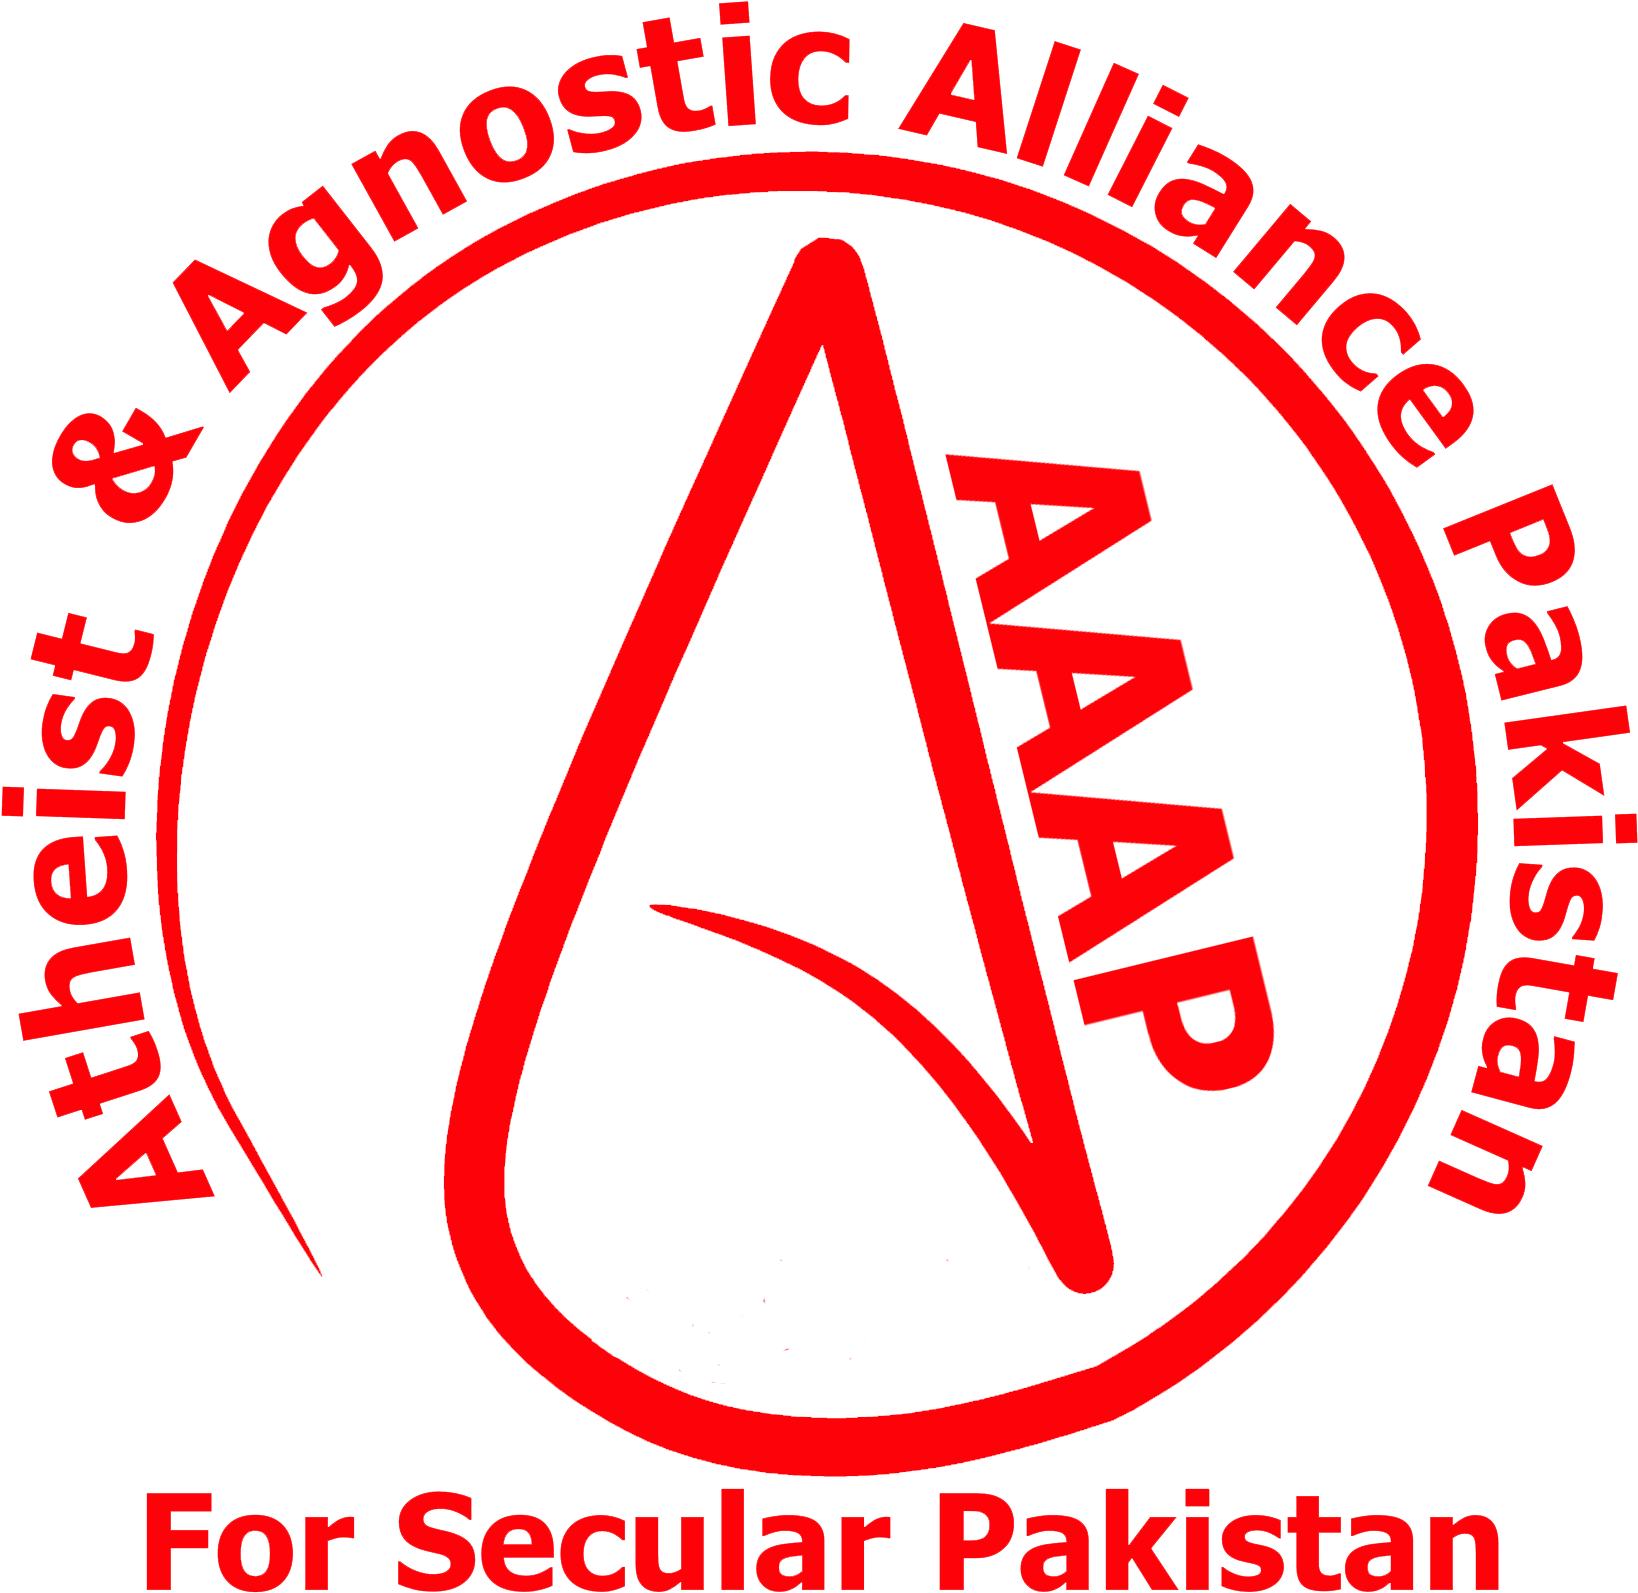 Atheist & Agnostic Alliance Pakistan - Atheist And Agnostic Alliance Pakistan Clipart (1838x1764), Png Download